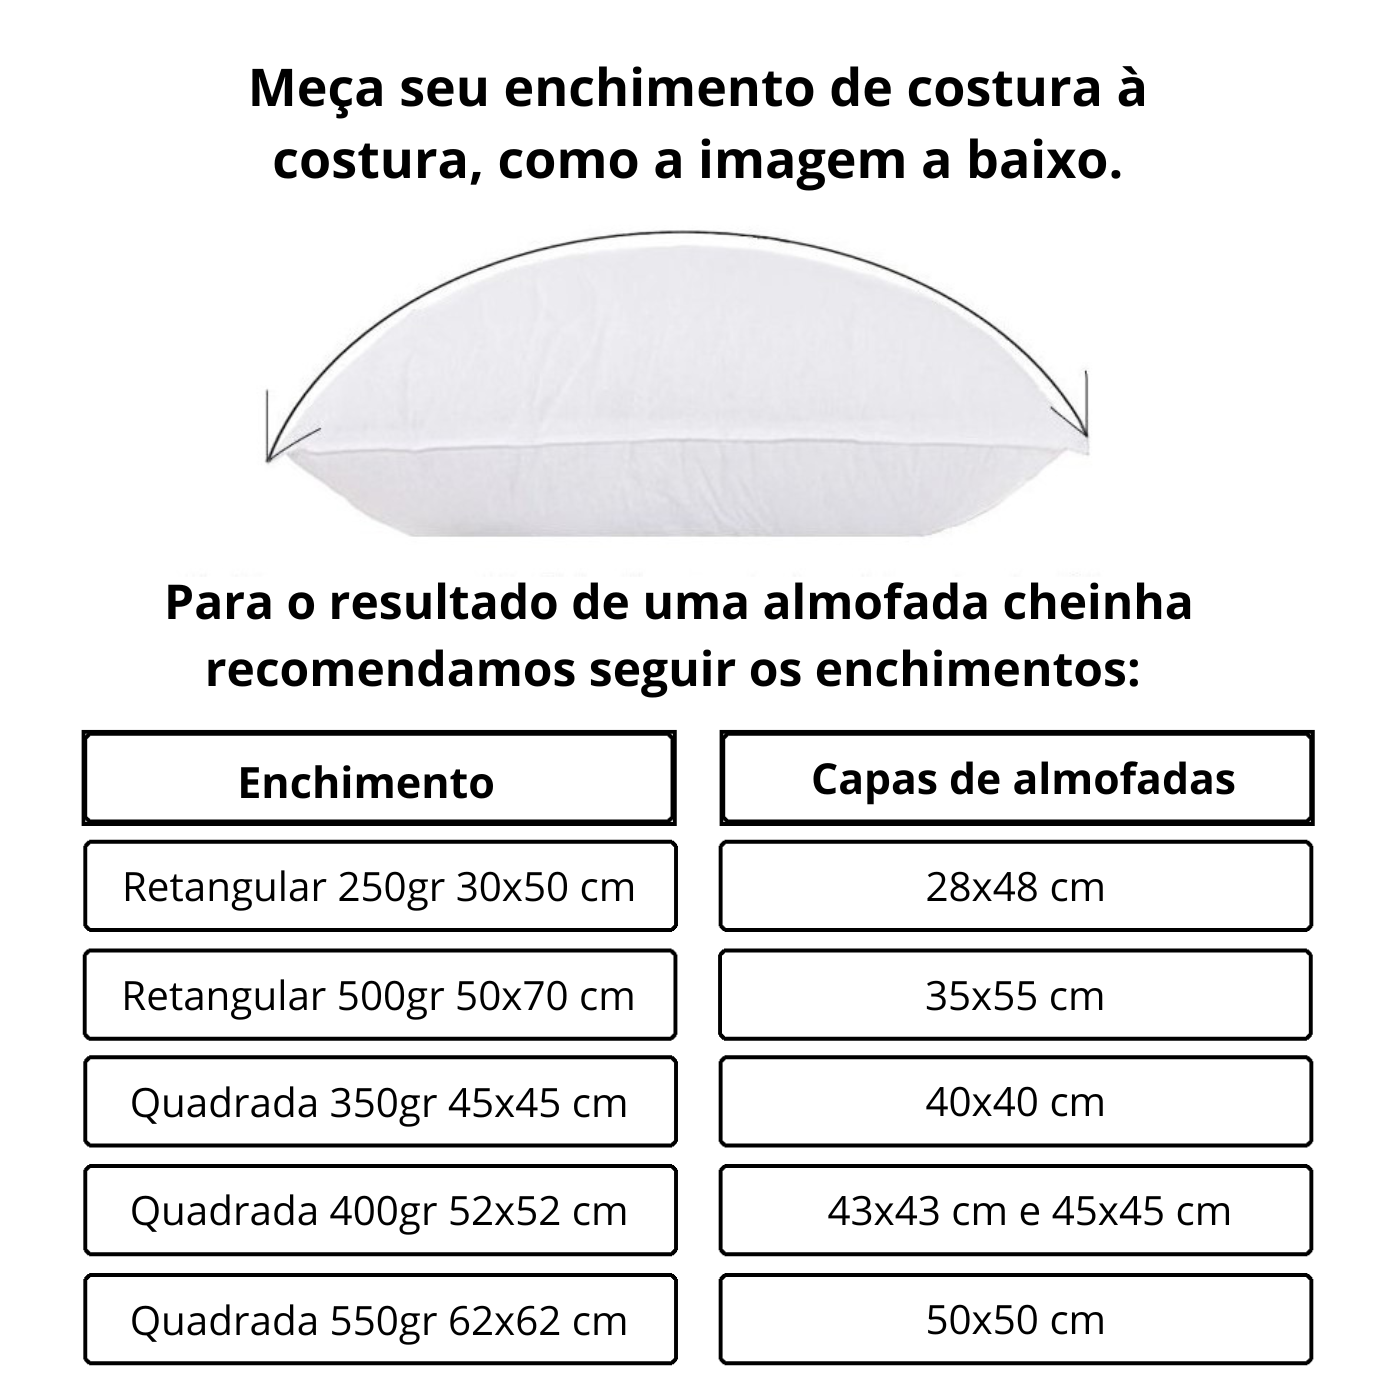 1 Refil Enchimento para Almofada com 500g Fibra de Silicone - Quadrada 52x52cm